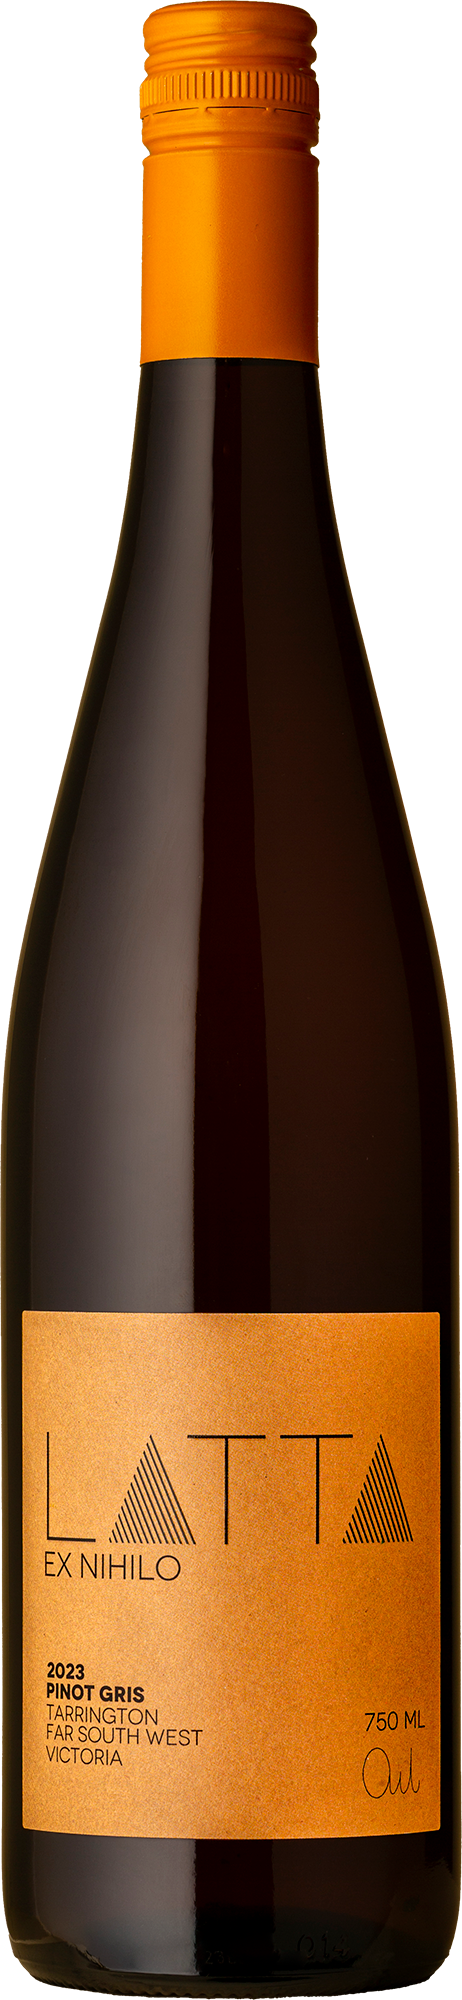 Latta - Ex Nihilo Pinot Gris 2023 Orange Wine